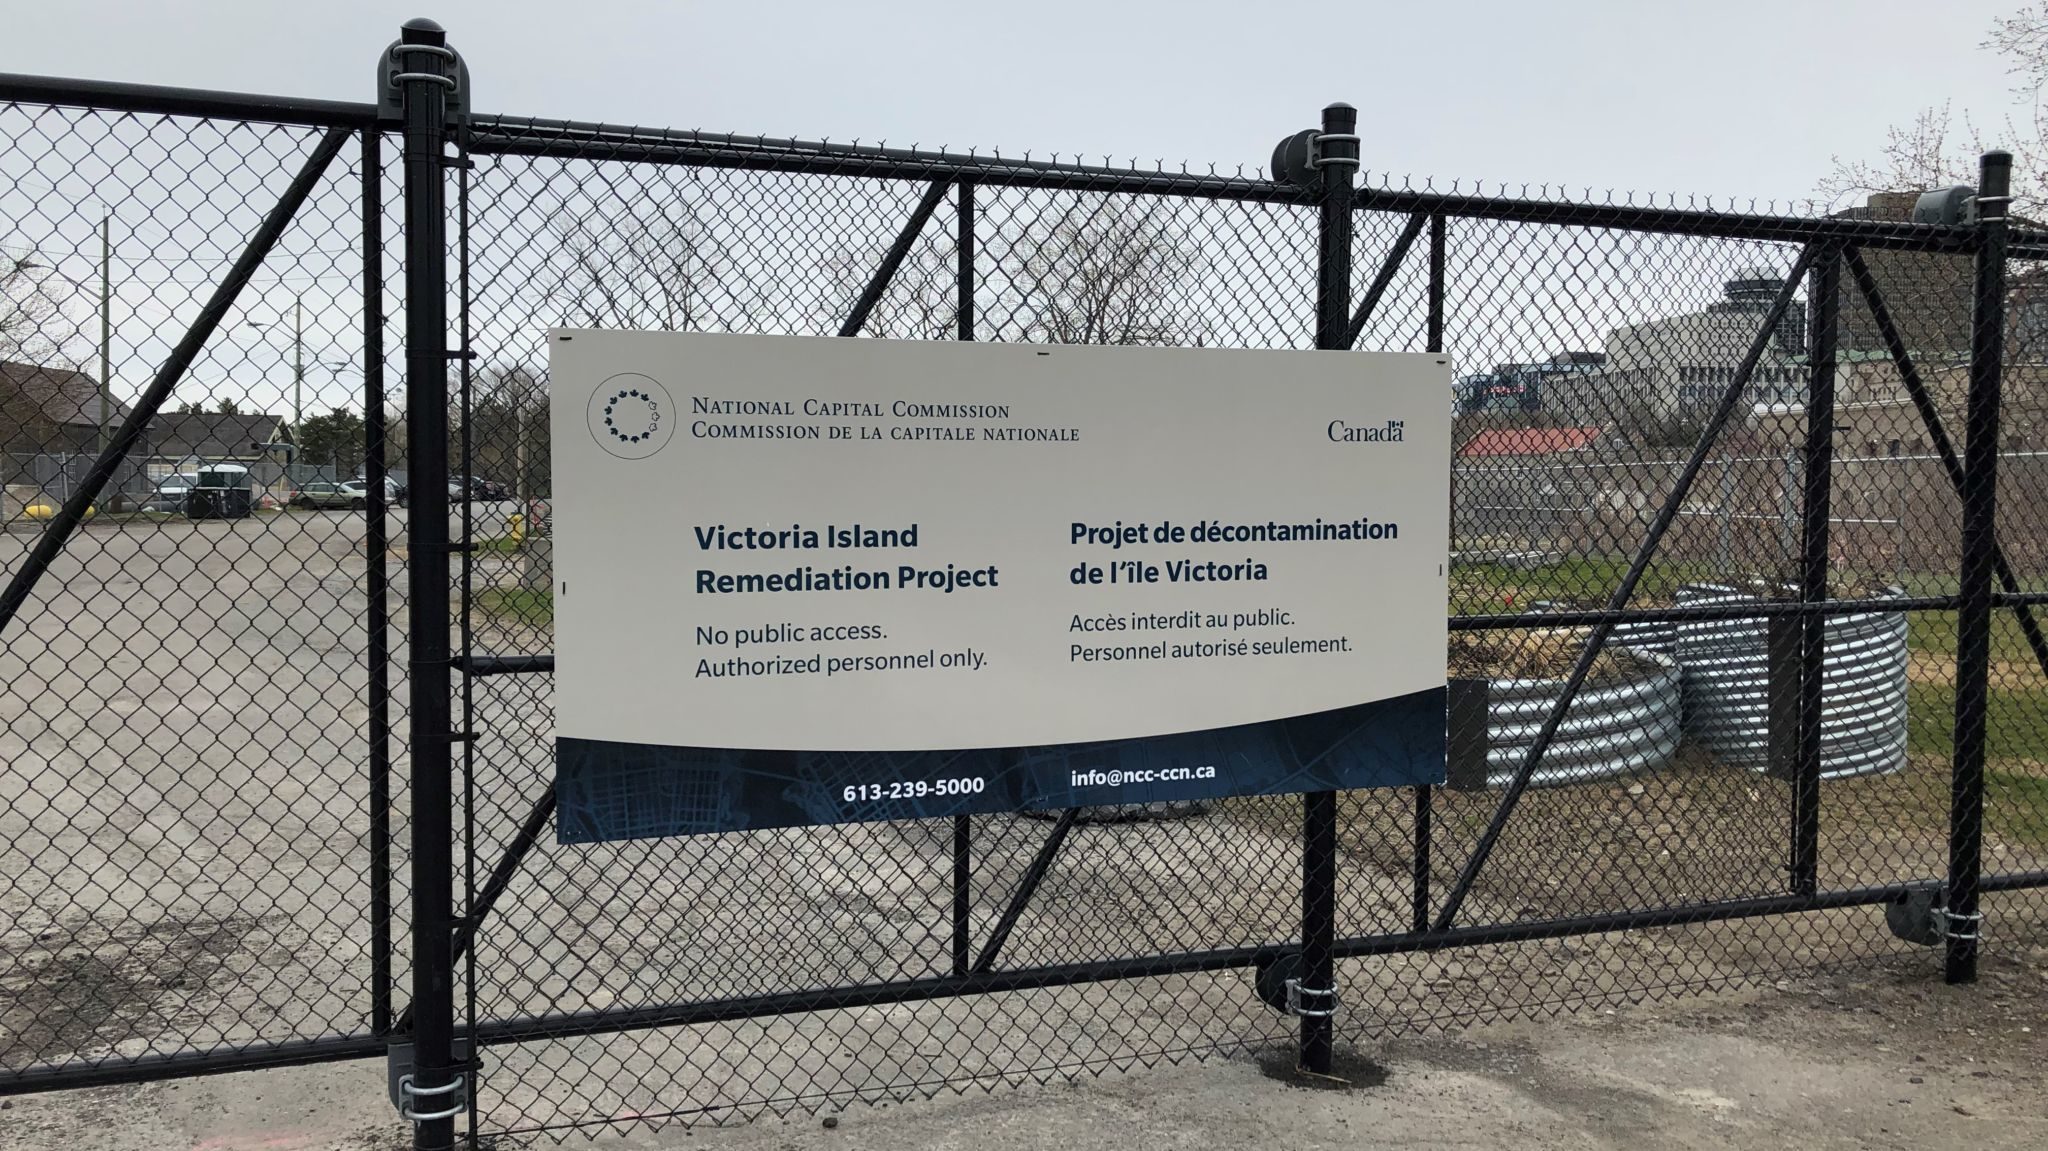 Panneau de la CCN installé sur une clôture où on peut lire : « Projet de décontamination de l’île Victoria. Accès interdit au public. Personnel autorisé seulement ».